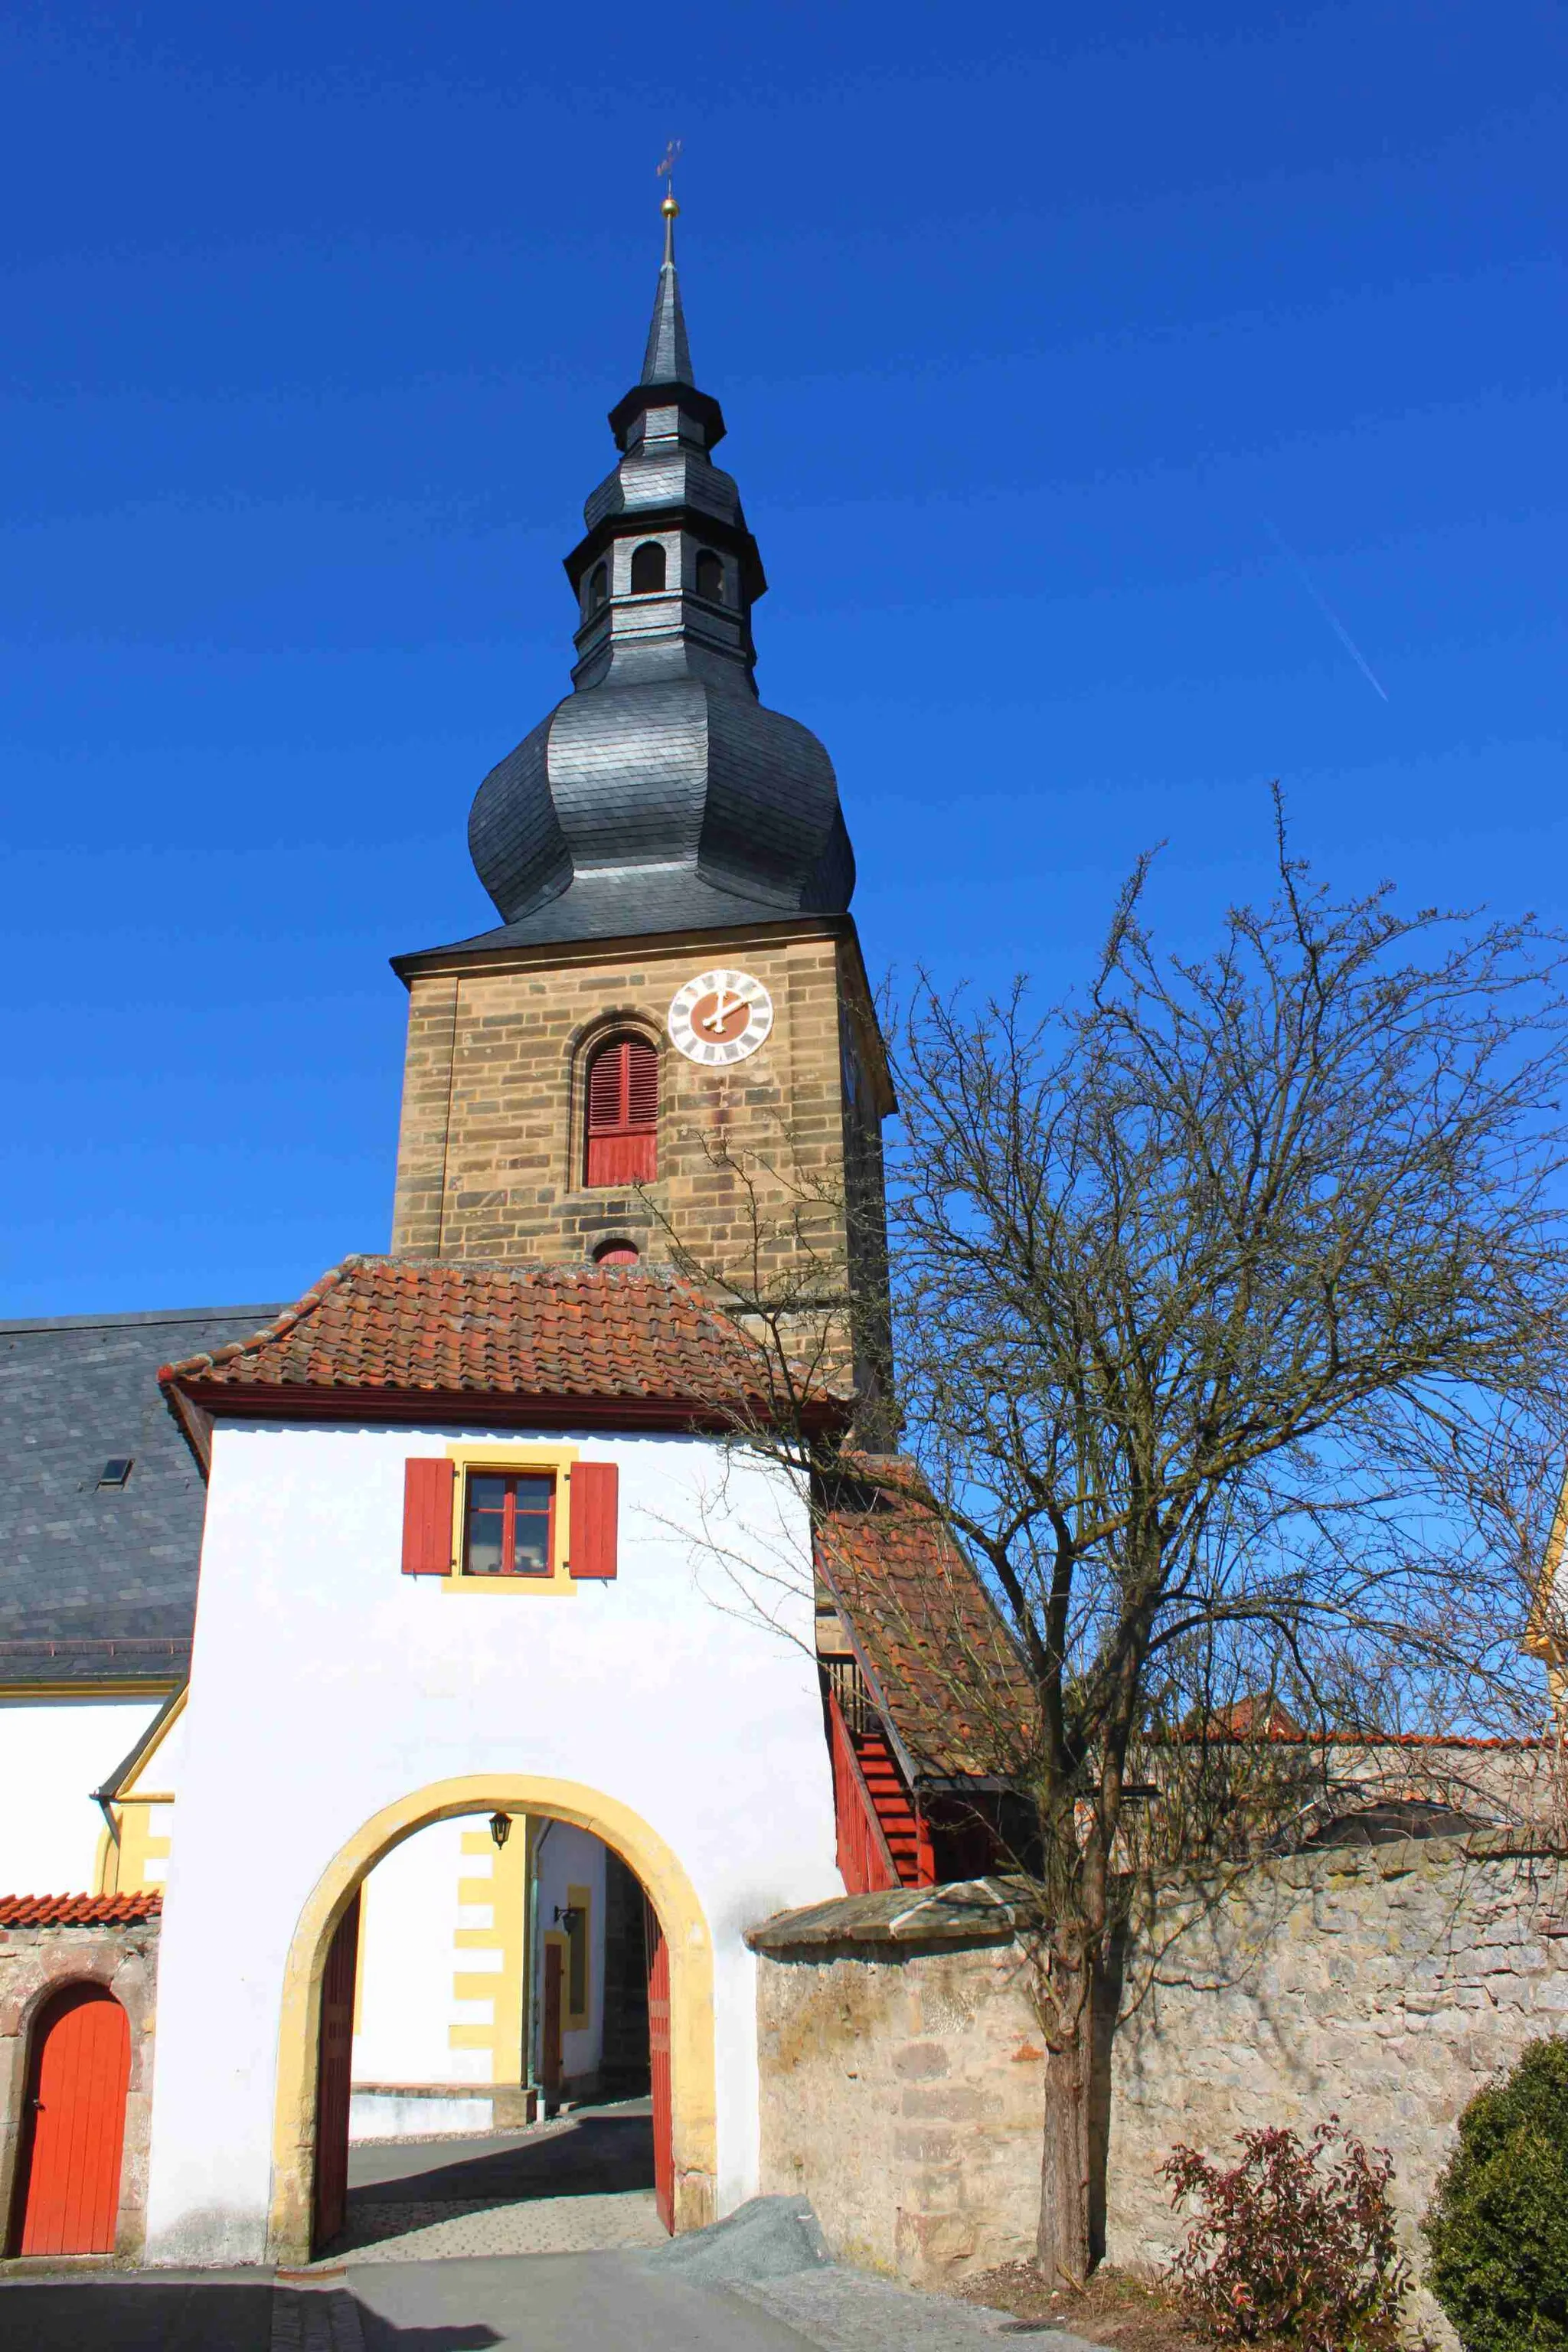 Obrázok Oberfranken